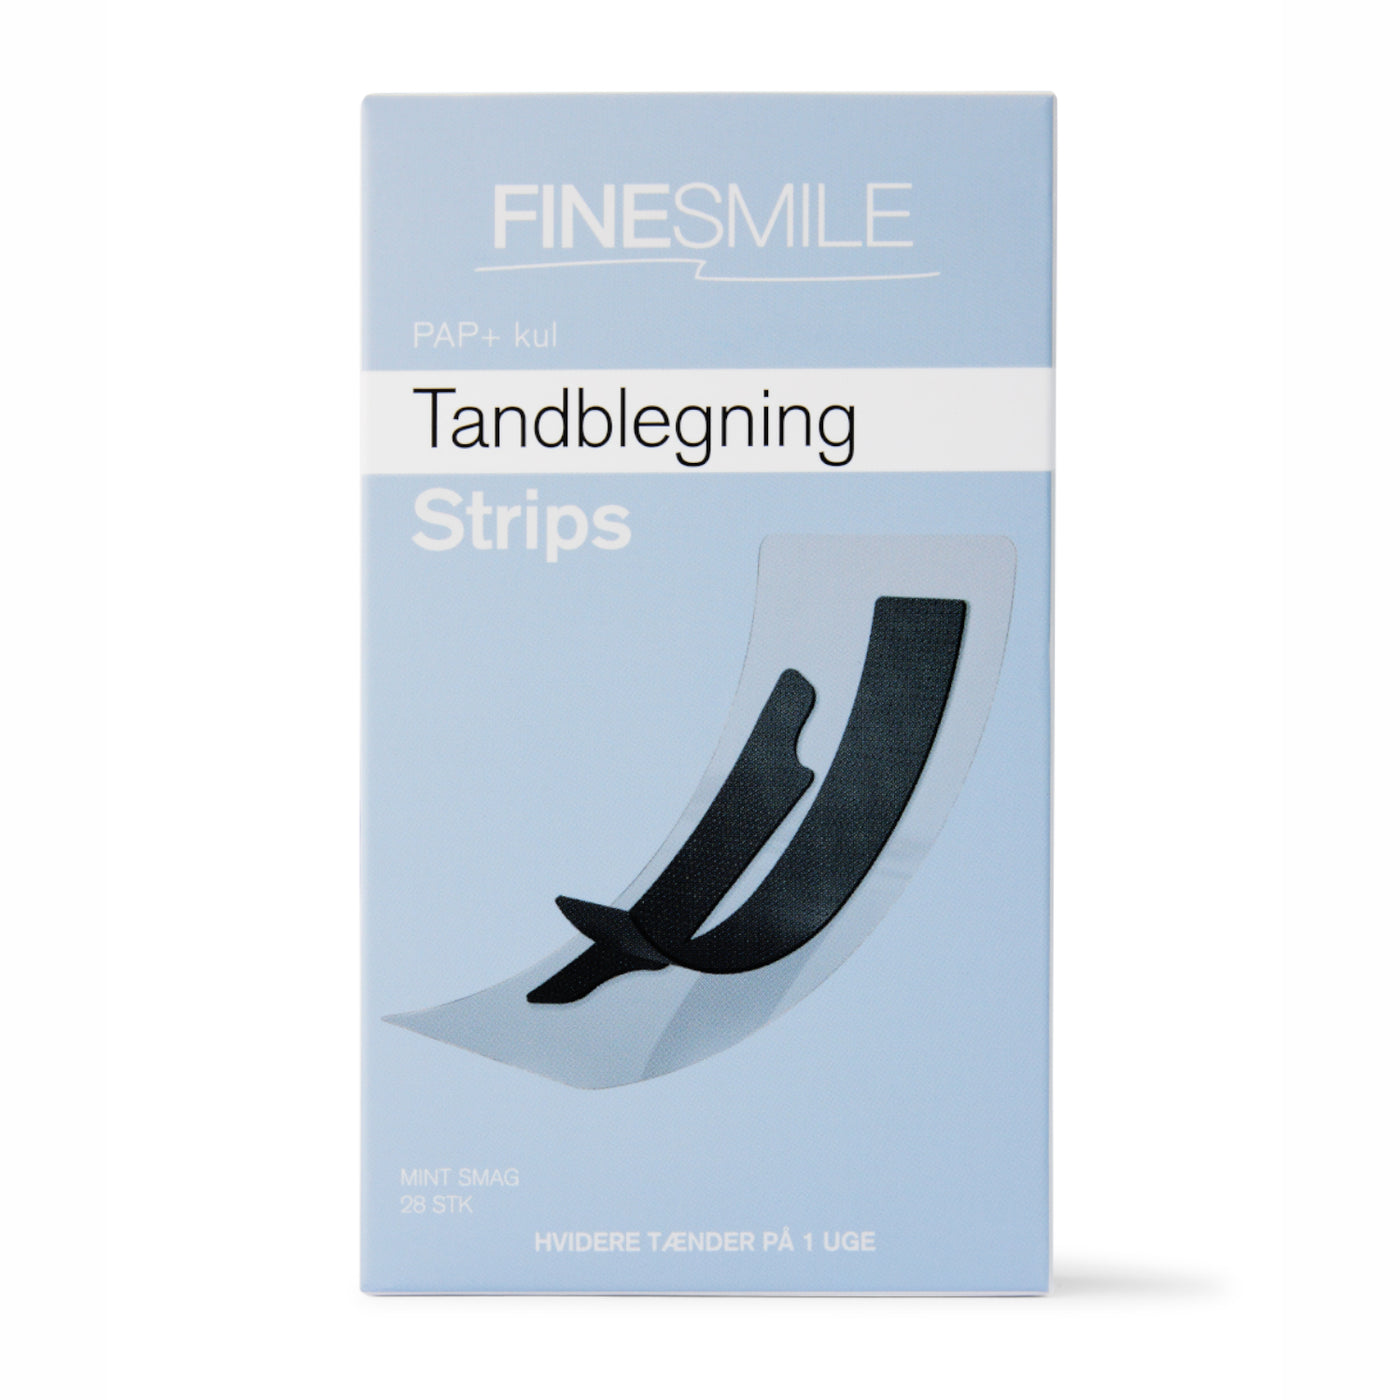 tandblegning strips fra Finesmile